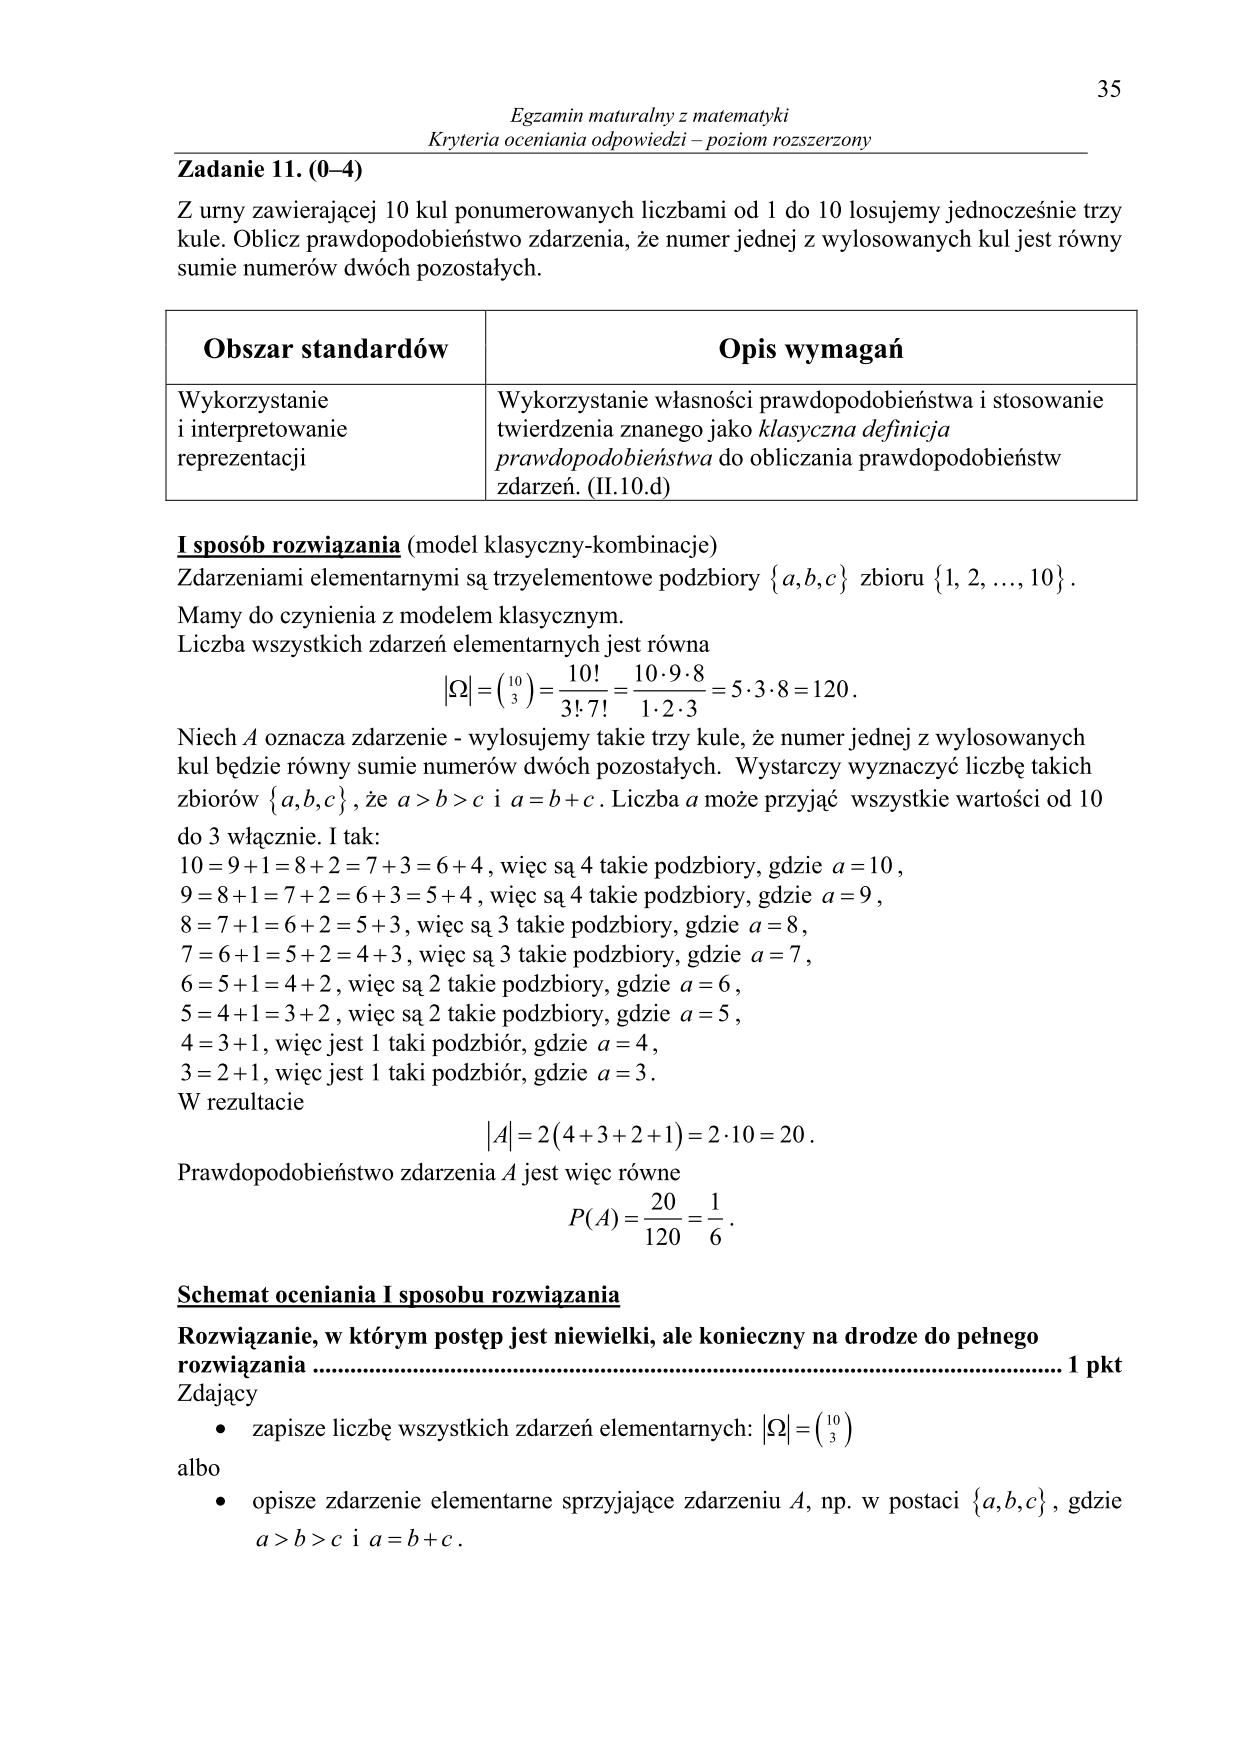 odpowiedzi-matematyka-poziom-rozszerzony-matura-2014-35